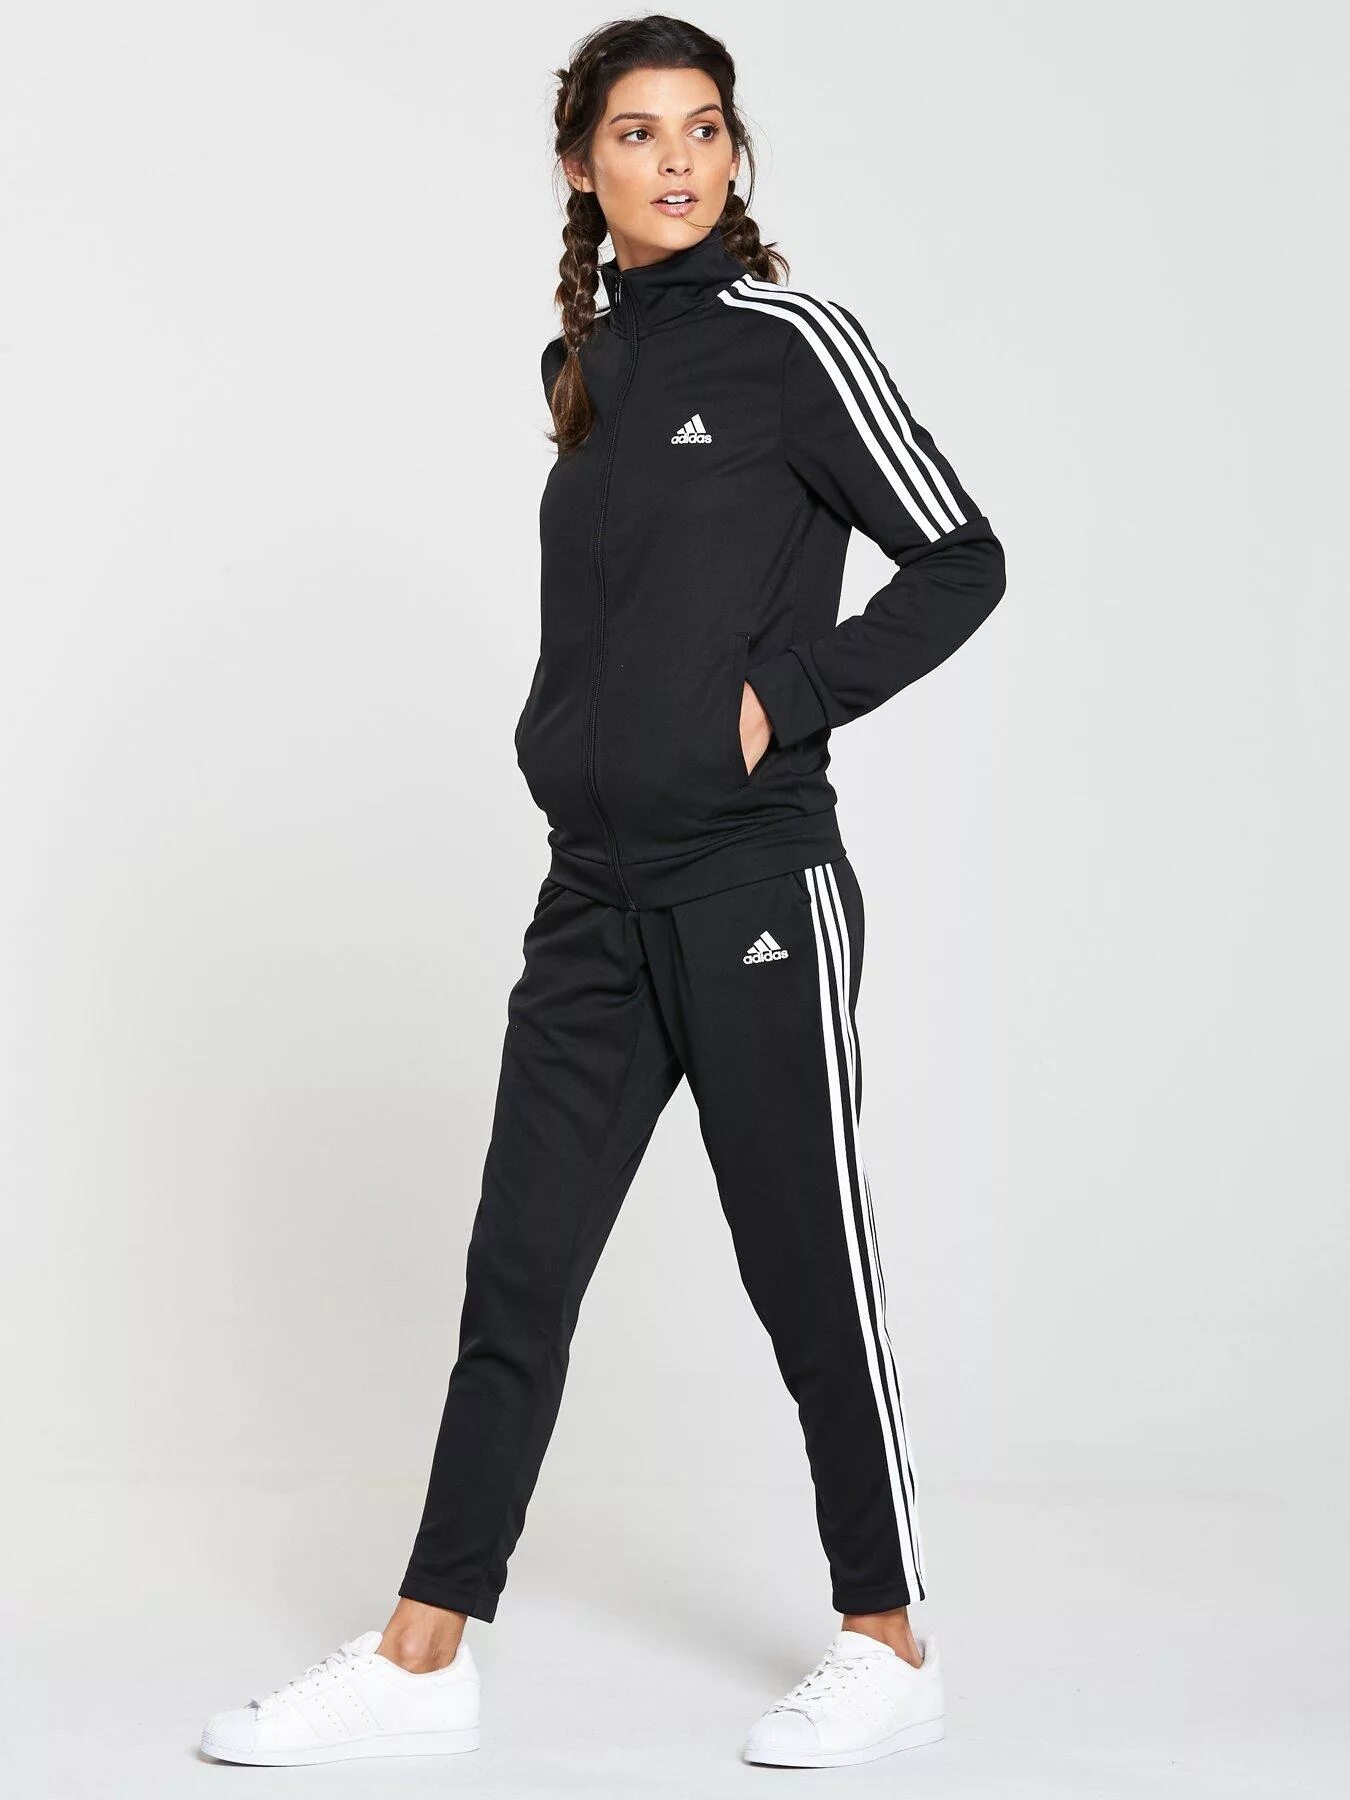 Tracksuit adidas женский. Спортивный костюм женский 2022 черный адидас. Костюм спортивный adidas Tracksuit. Adidas tiro спортивный костюм.